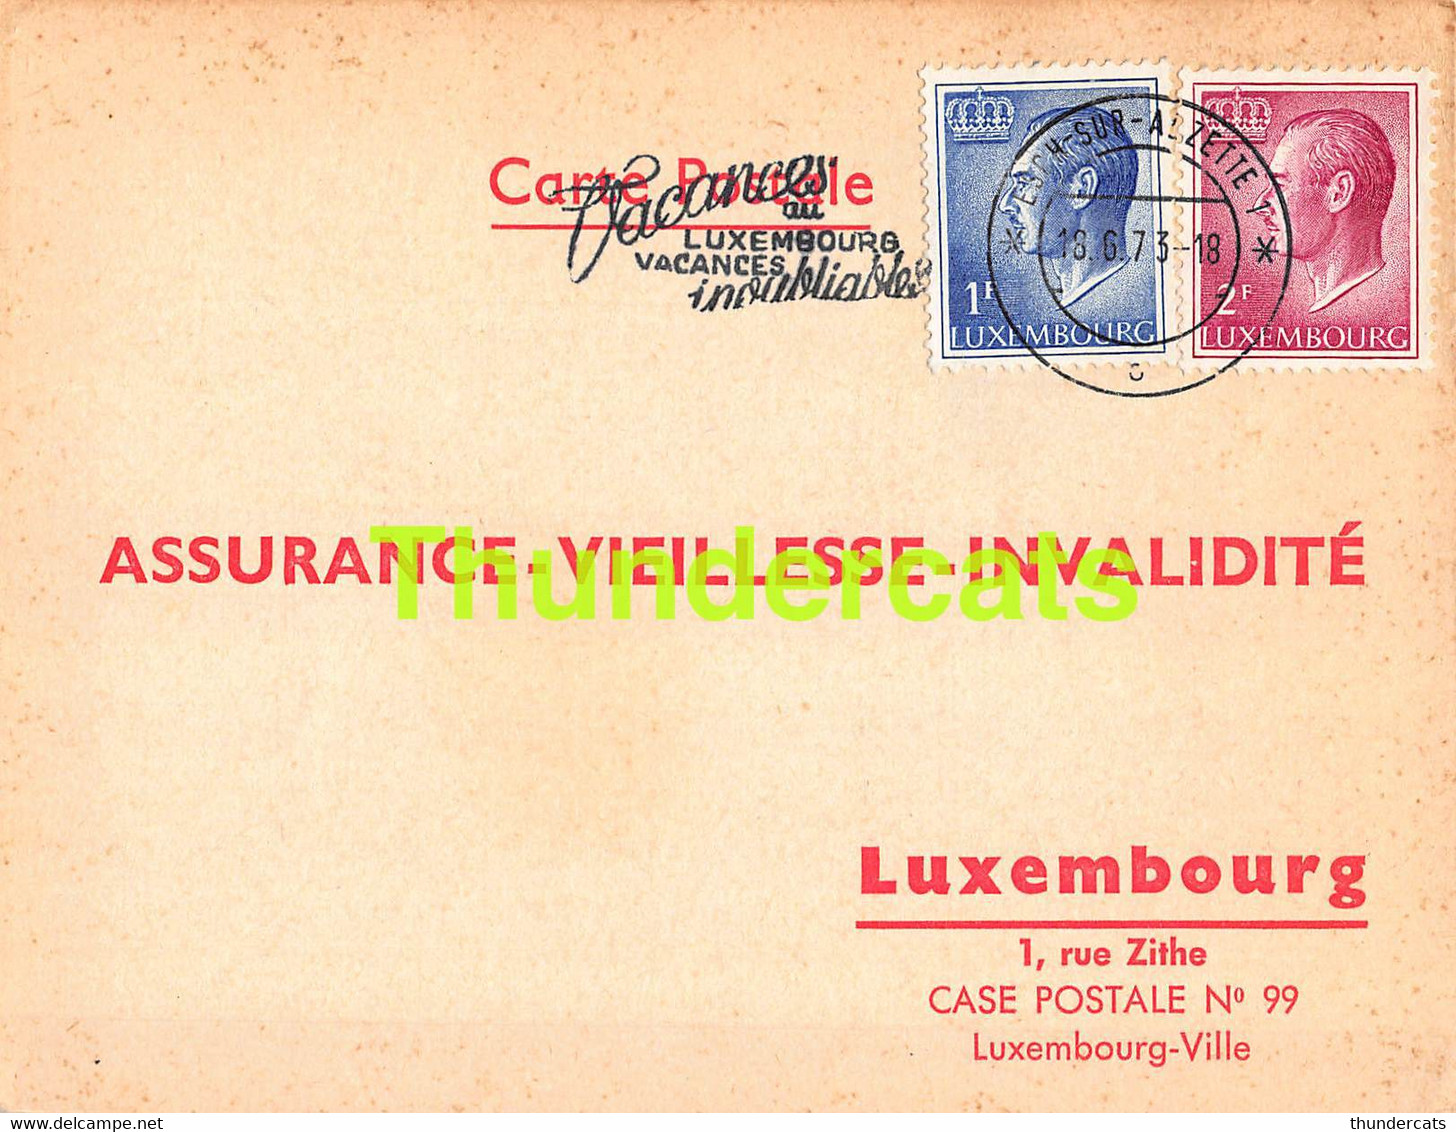 ASSURANCE VIEILLESSE INVALIDITE LUXEMBOURG 1973 ESCH SUR ALZETTE  TESSARO STRAMARE - Briefe U. Dokumente